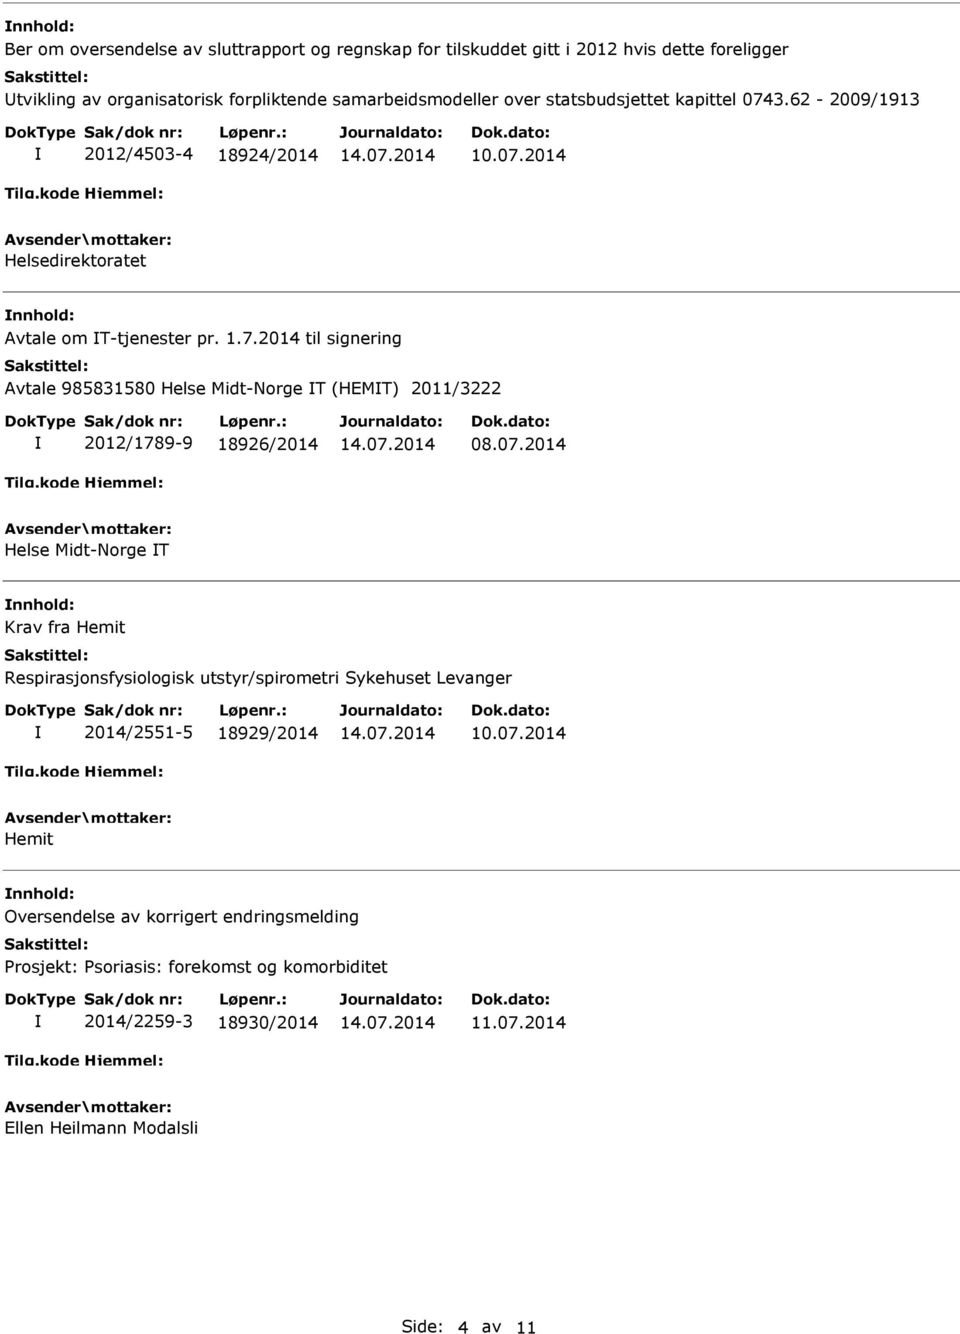 07.2014 Helse Midt-Norge T Krav fra Hemit Respirasjonsfysiologisk utstyr/spirometri Sykehuset Levanger 2014/2551-5 18929/2014 Hemit Oversendelse av korrigert